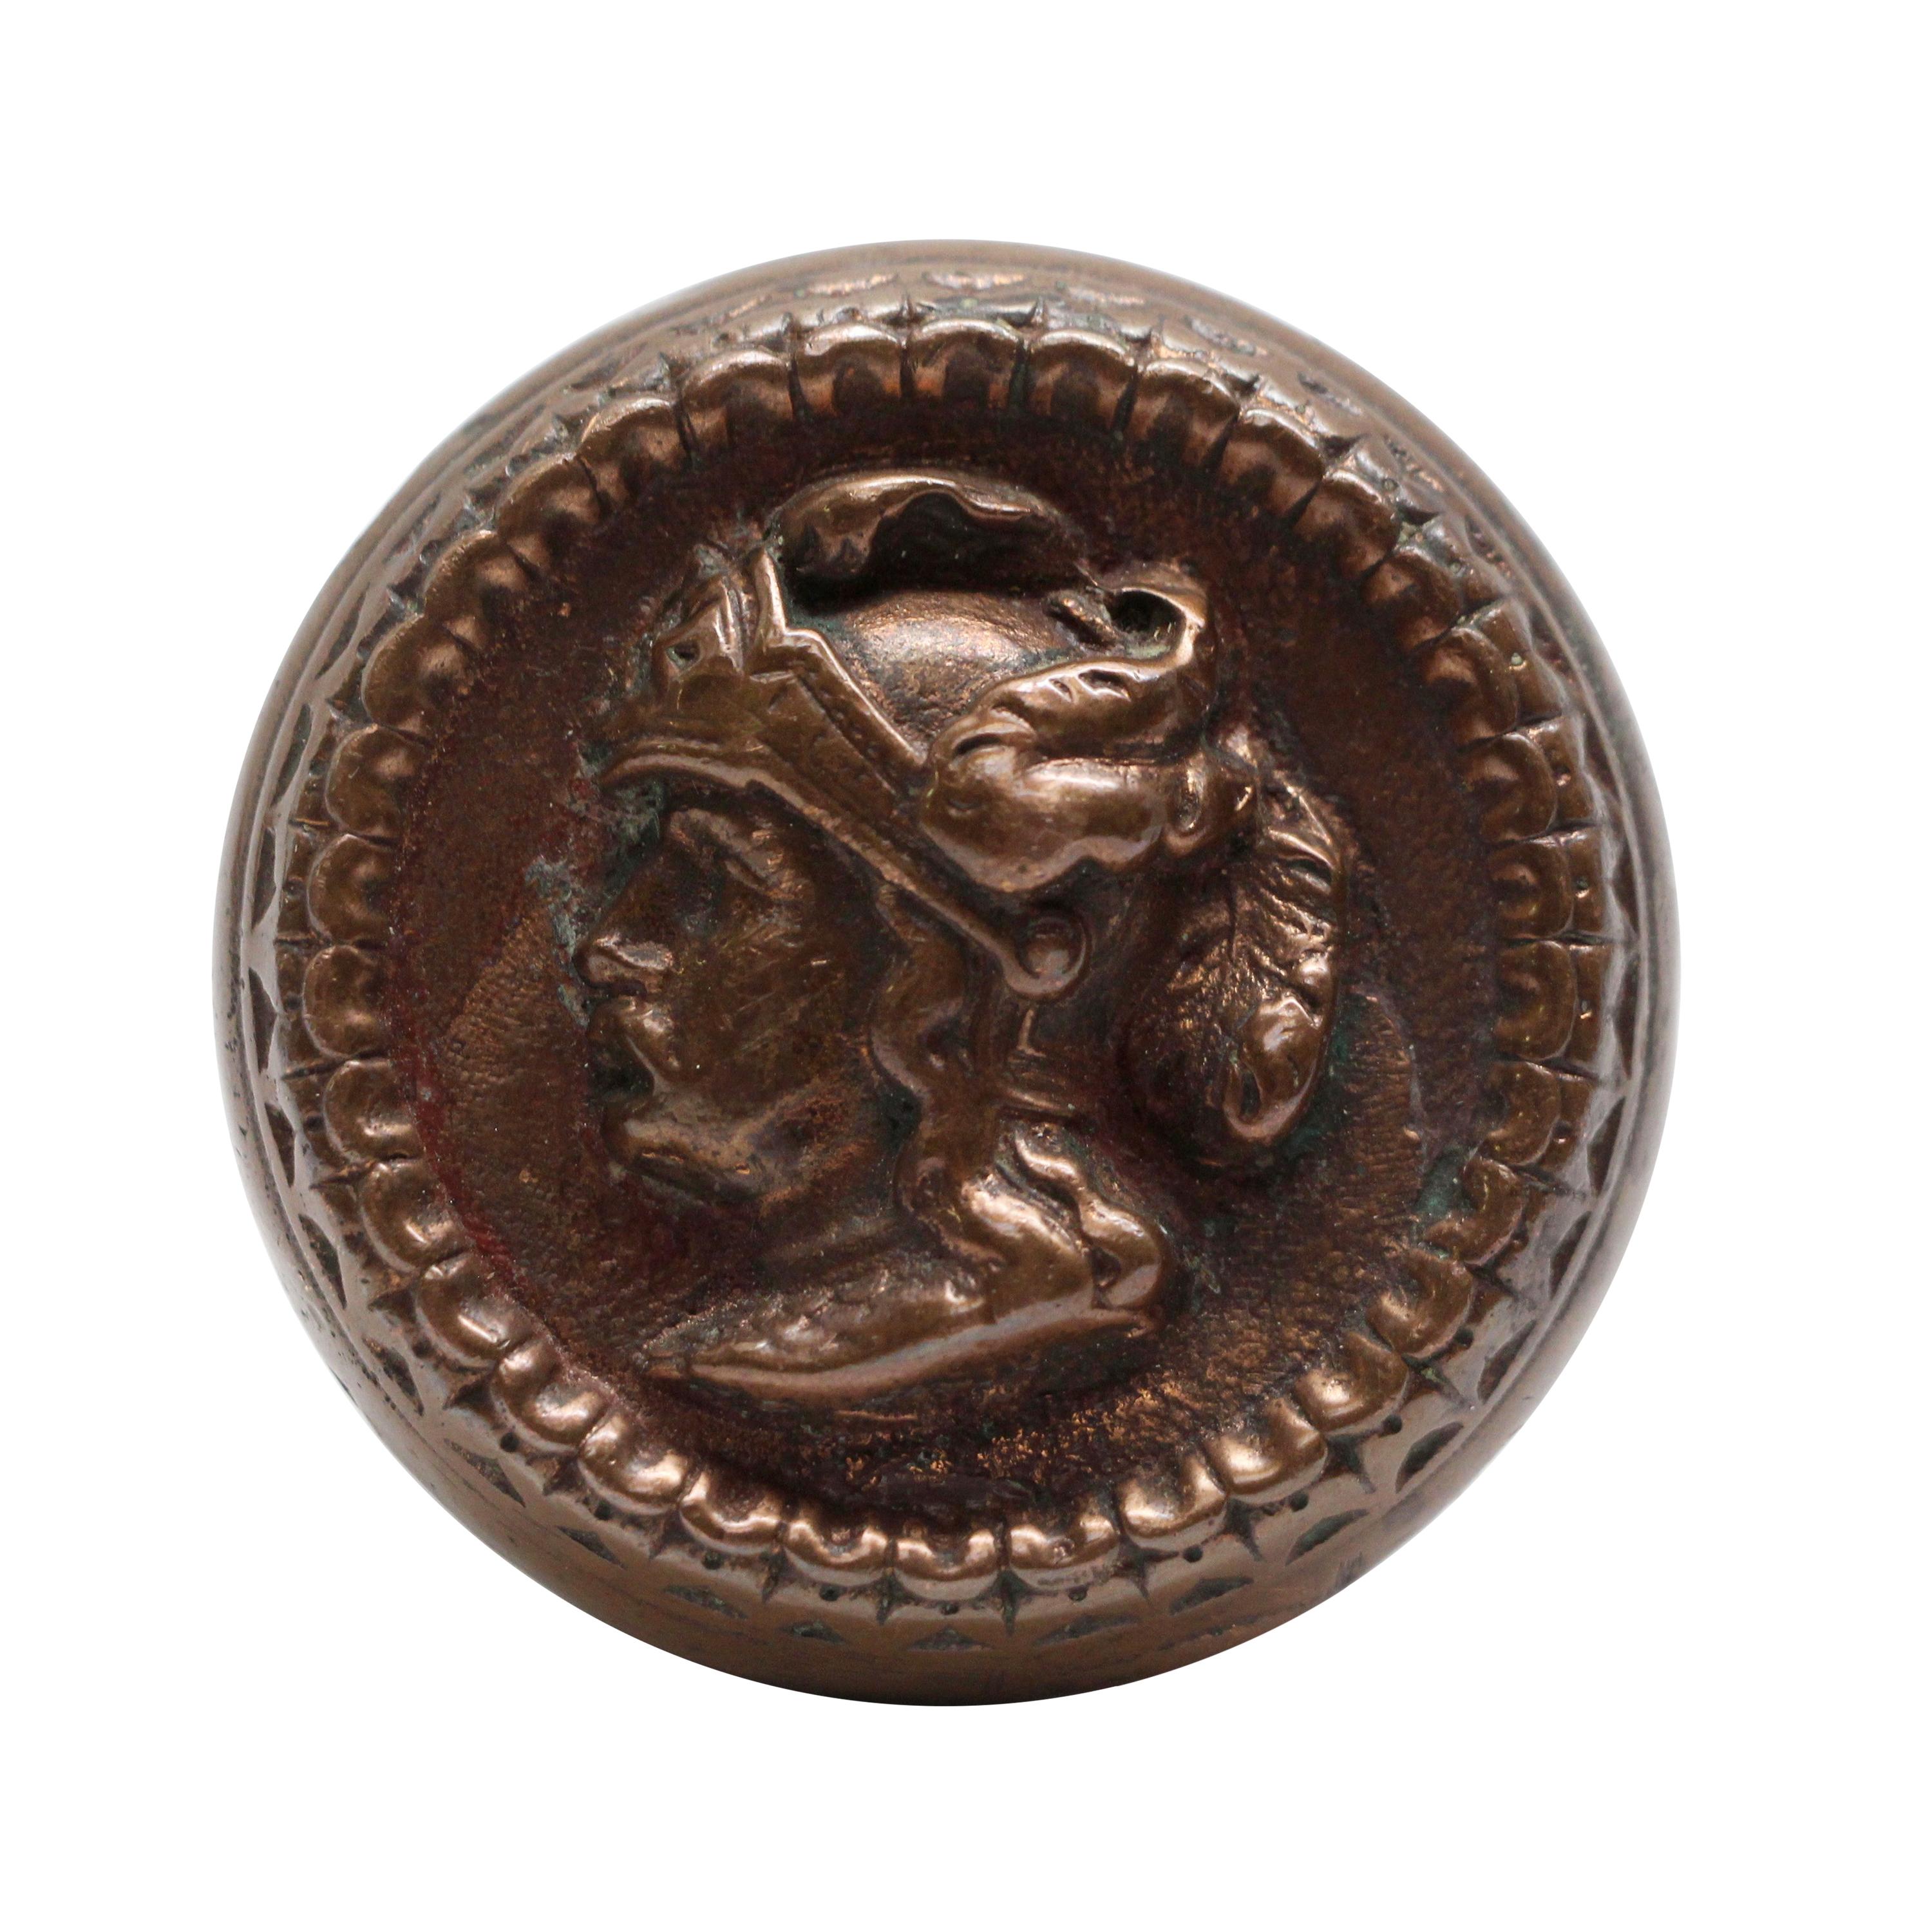 Russell & Erwin Plumed Knight Helmet Figural Doorknob 1870 circa